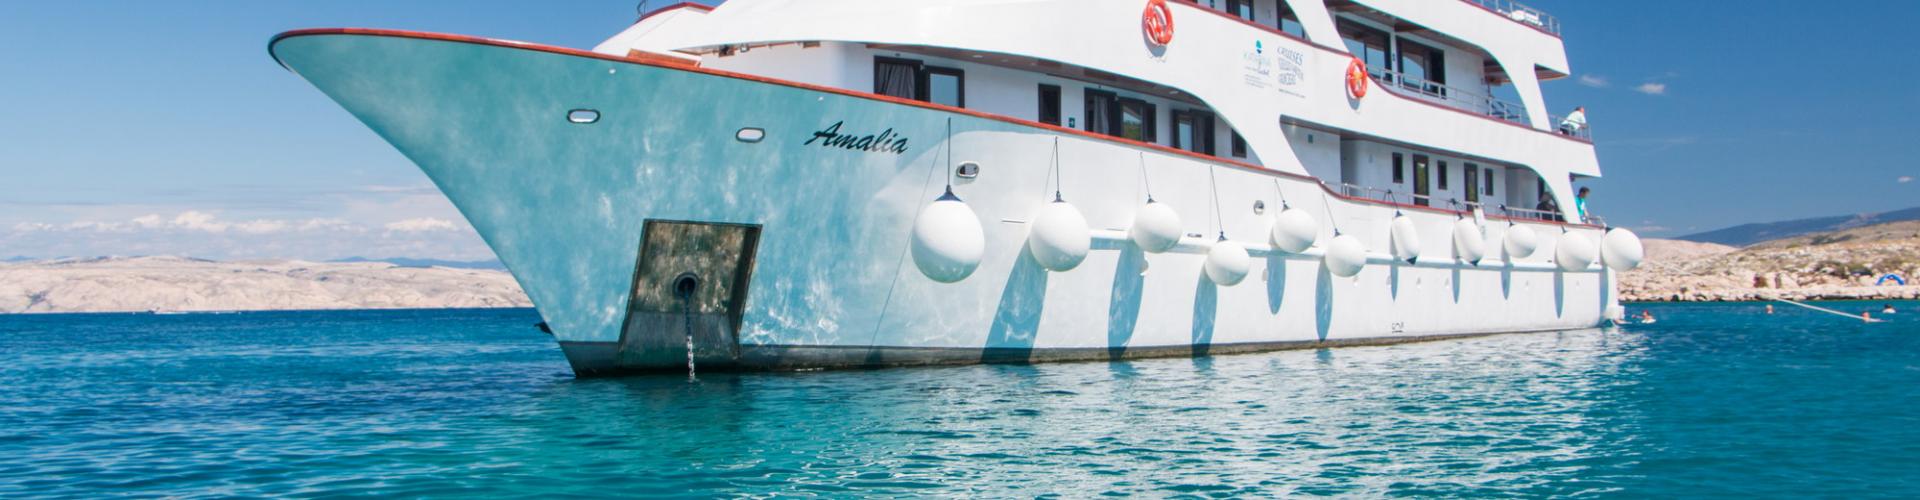 Premium Superior navire de croisière MV Amalia- yacht à moteur